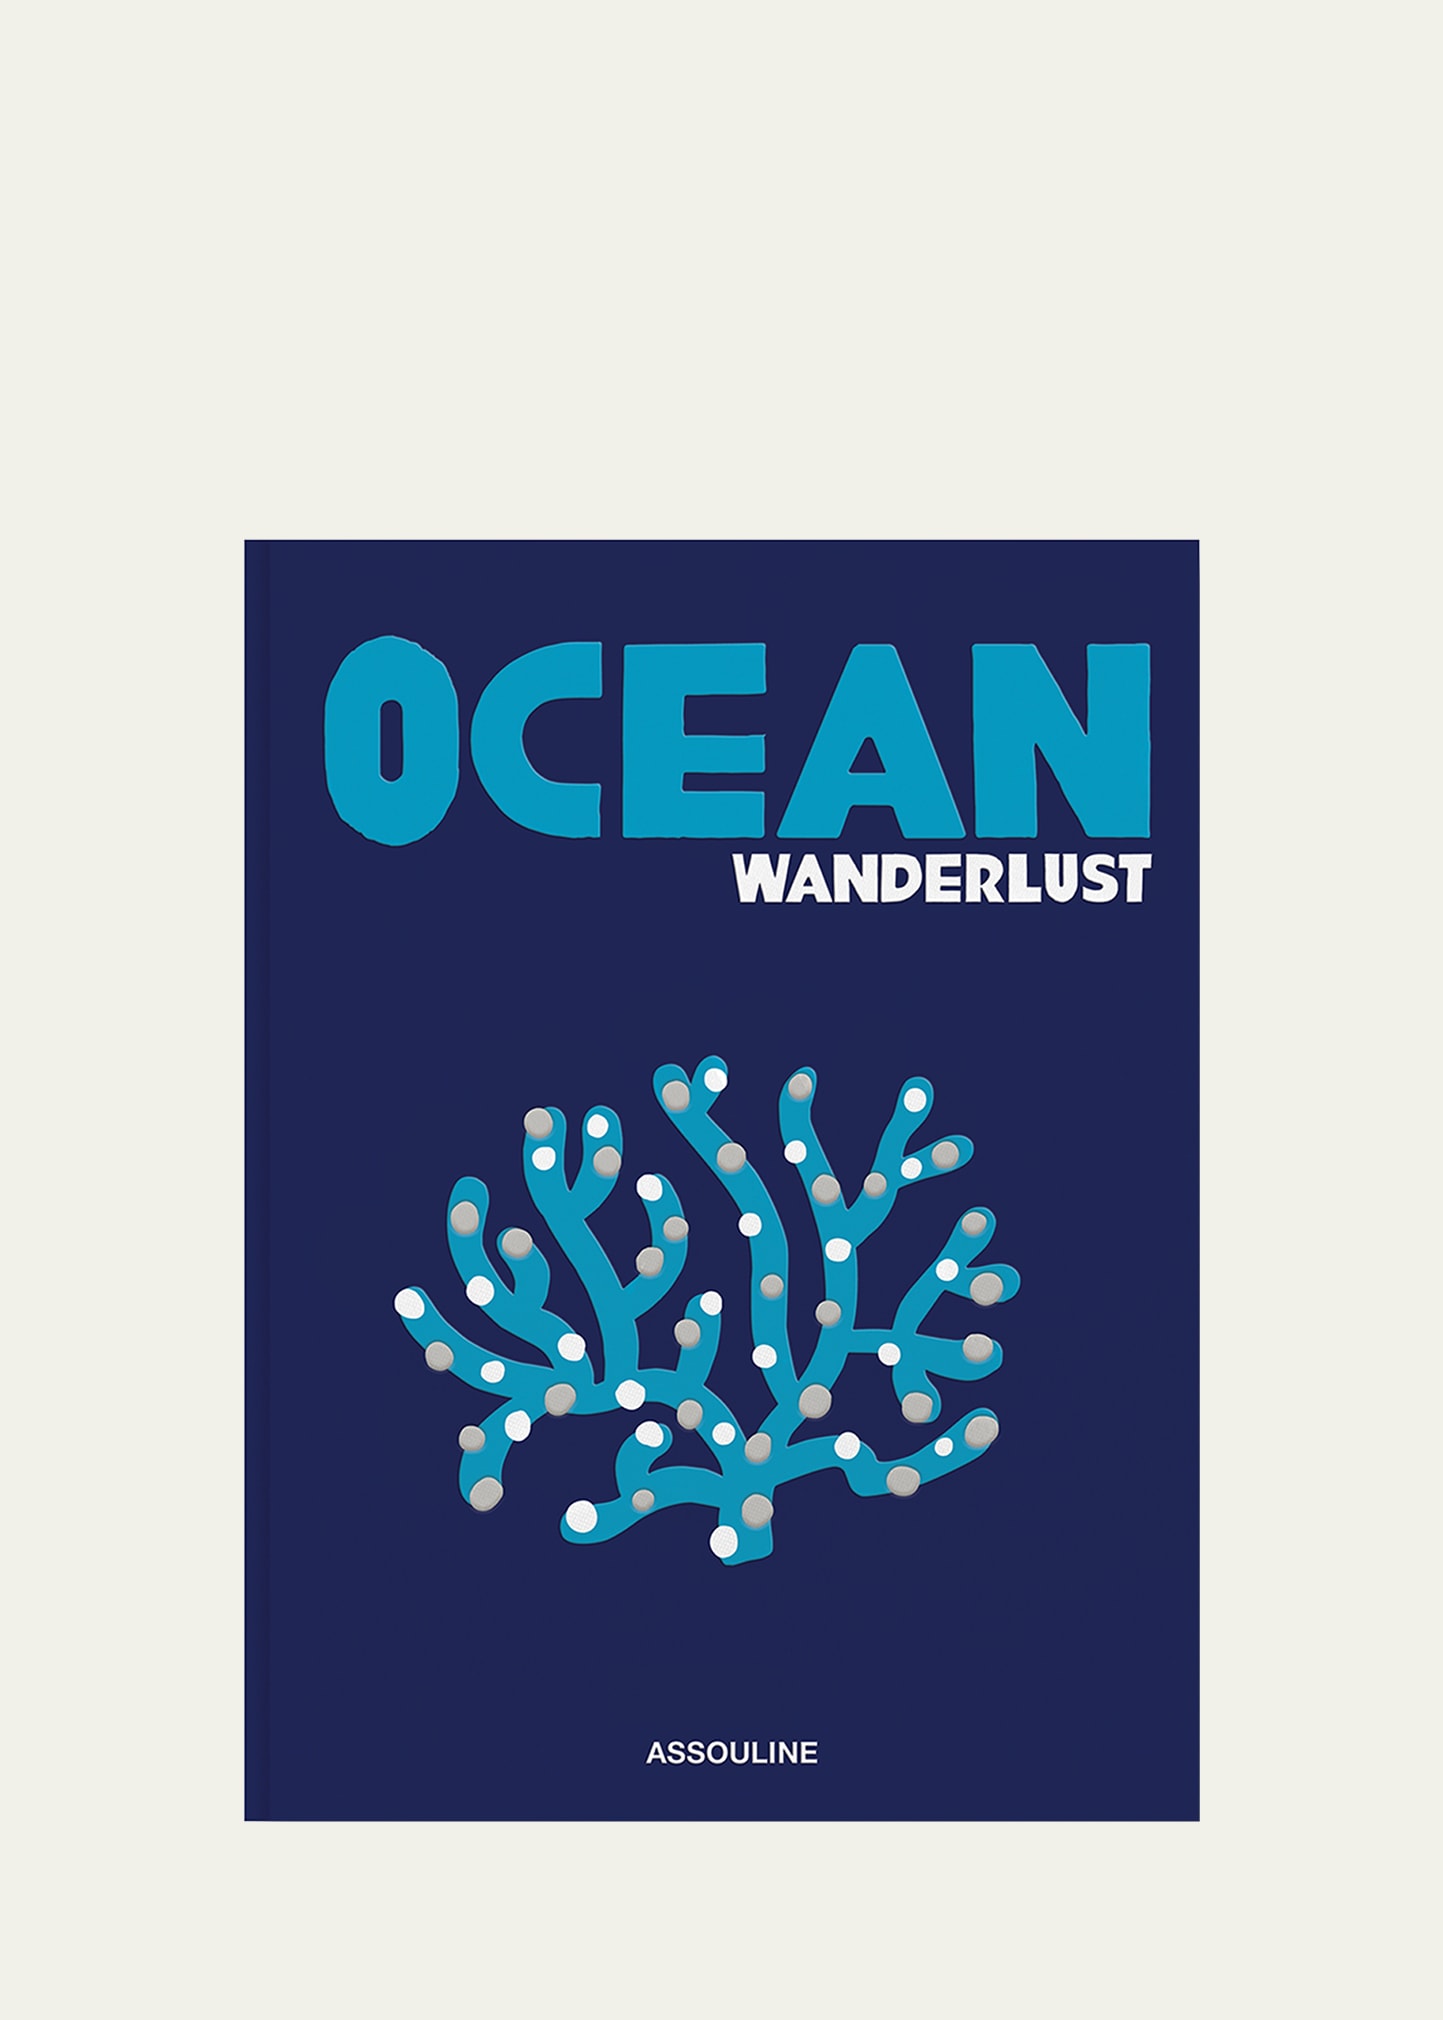 "Ocean Wanderlust" Book by Kevin Koenig